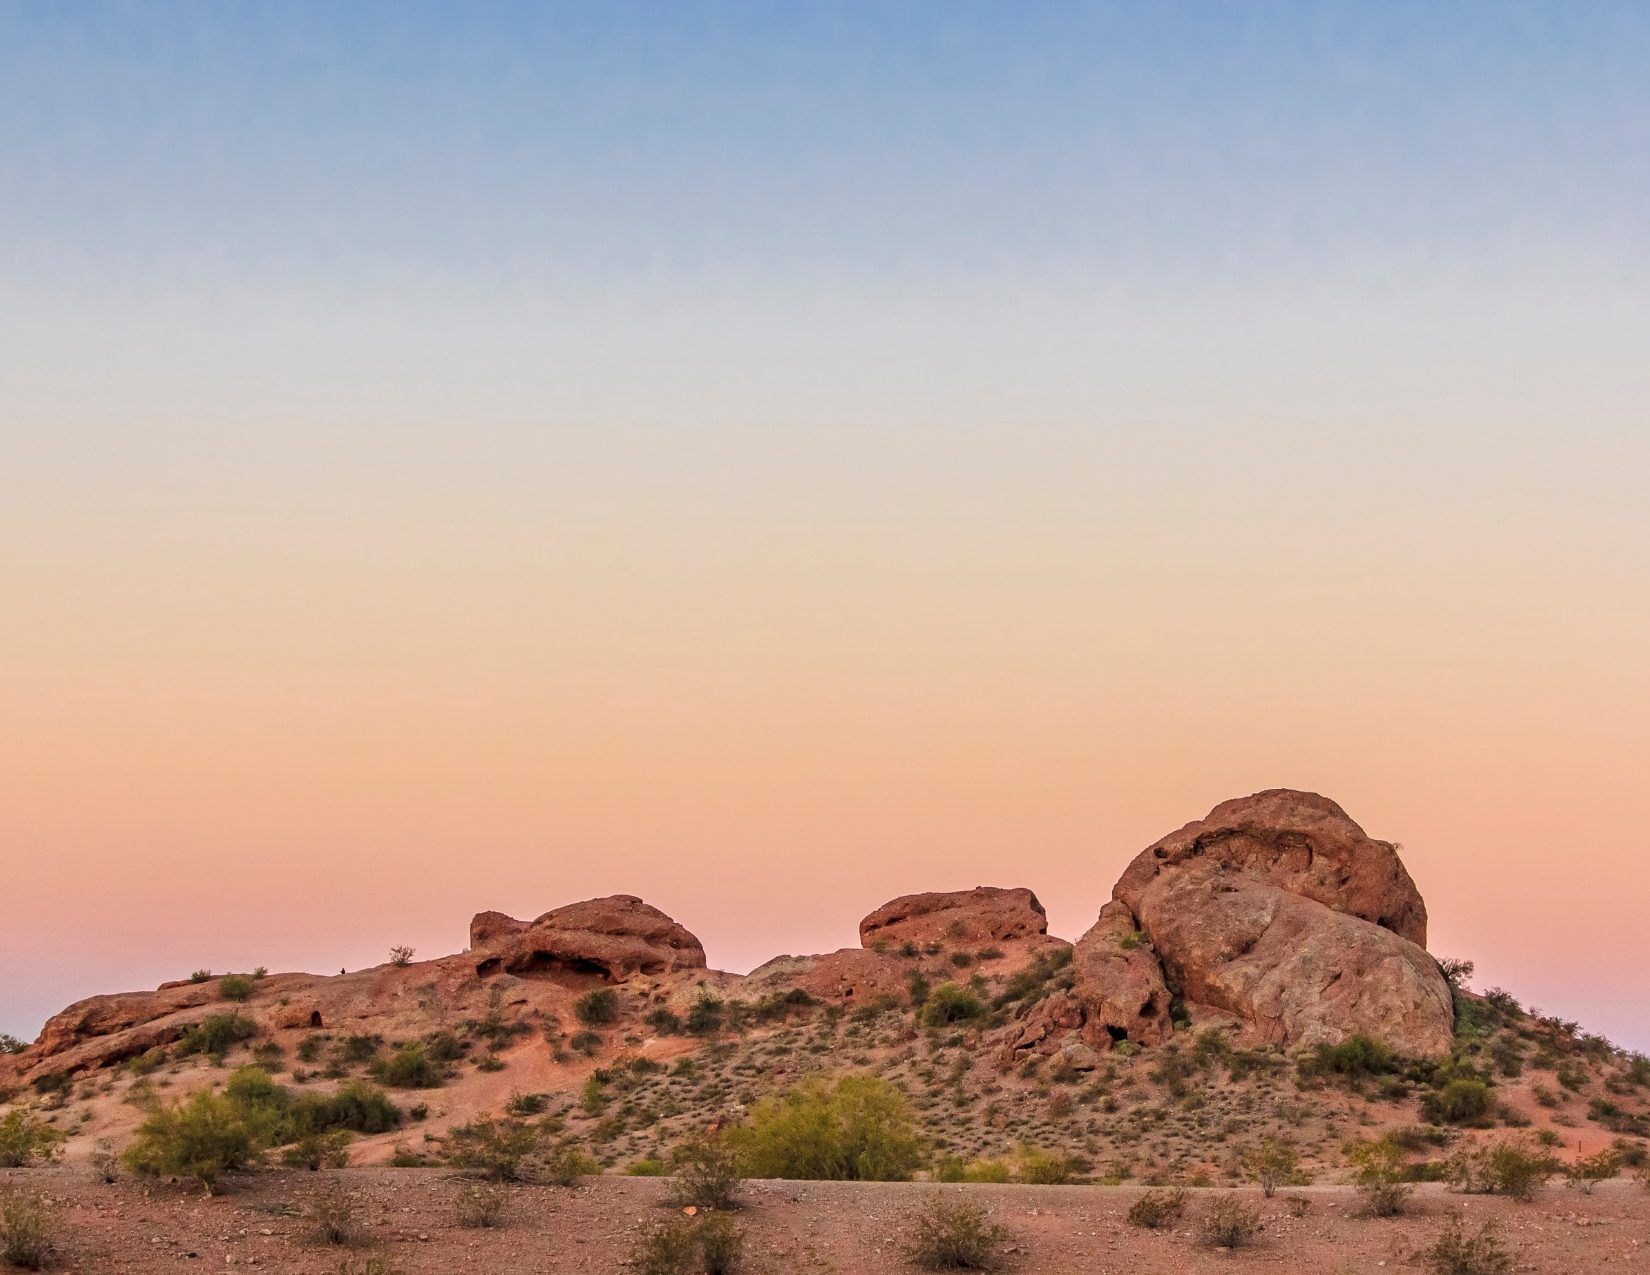 View of the Papago rocks at Papago Park in Tempe Arizona